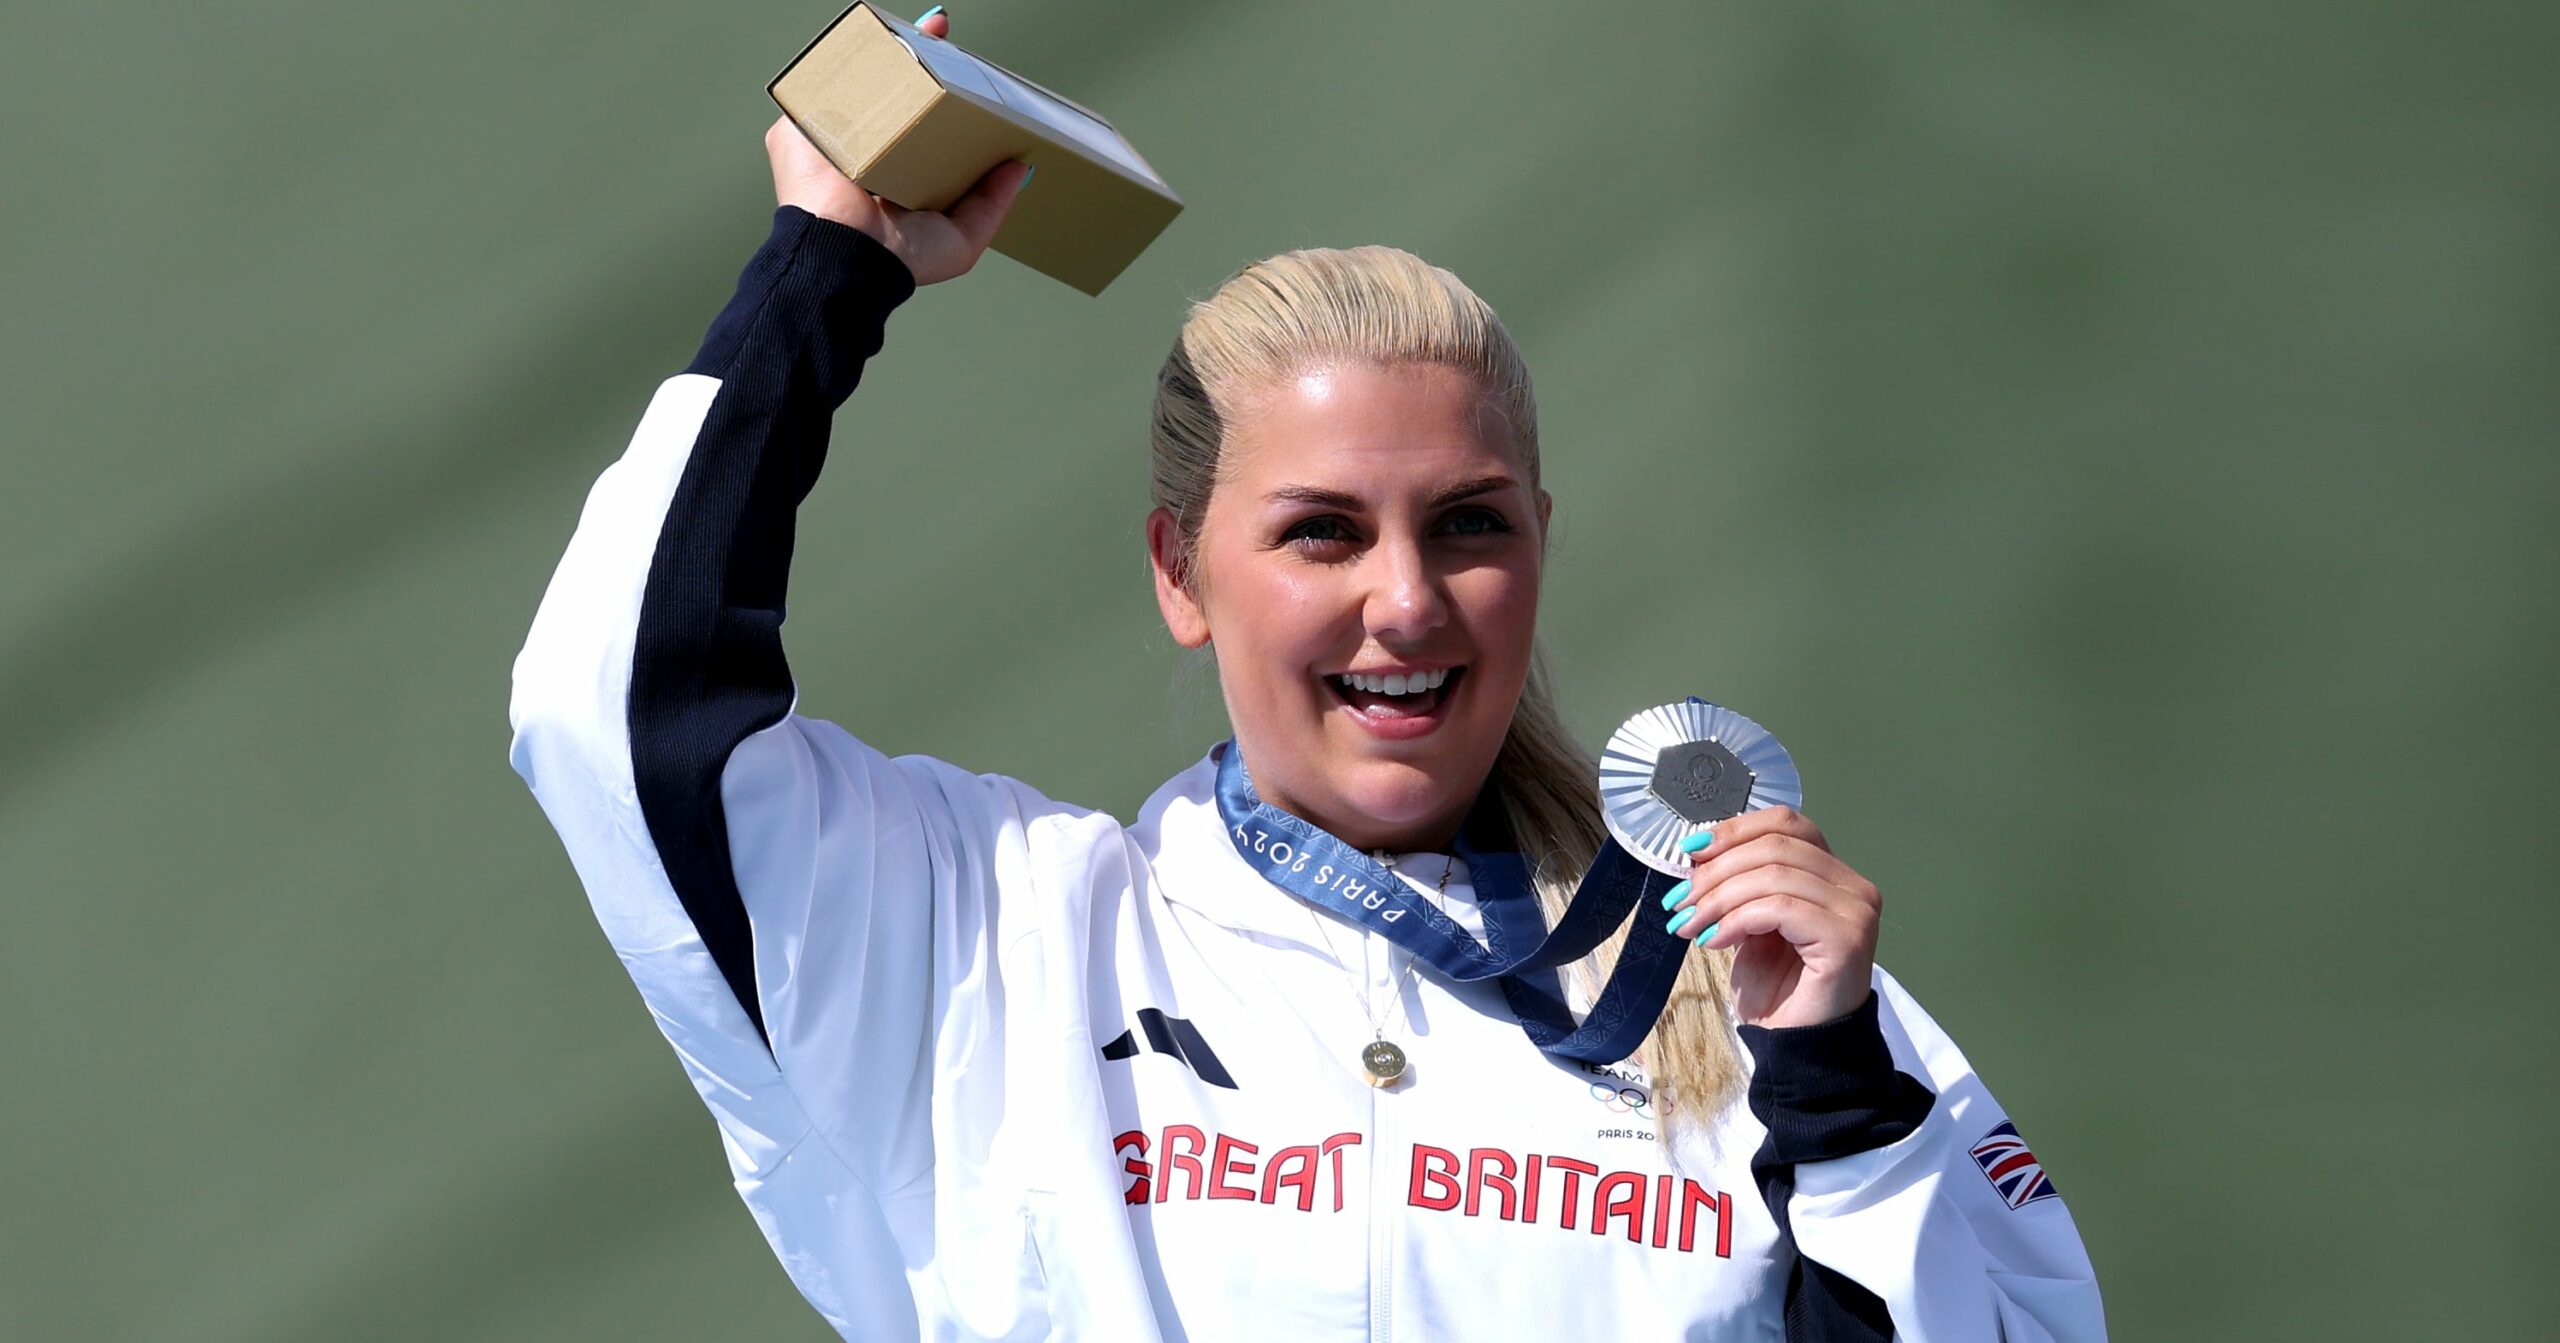 « Votre vie ne doit pas s’arrêter » : Amber Rutter, de l’équipe de Grande-Bretagne, parle de son statut de maman et d’athlète olympique